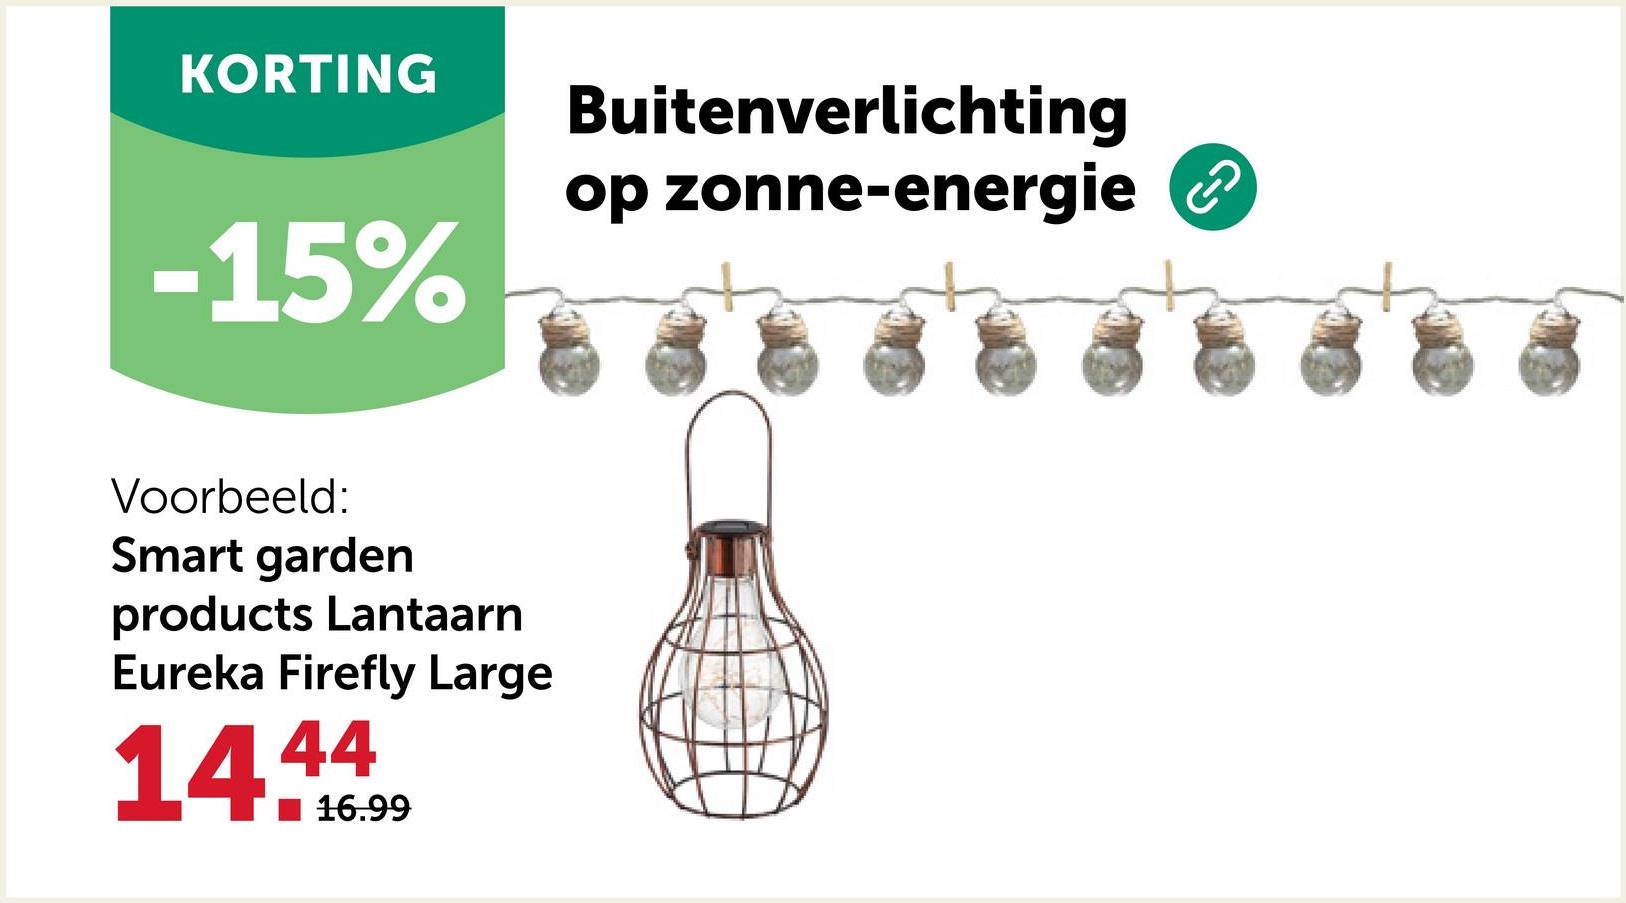 KORTING
-15%
Buitenverlichting
op zonne-energie ②
Voorbeeld:
Smart garden
products Lantaarn
Eureka Firefly Large
44
14.16.99